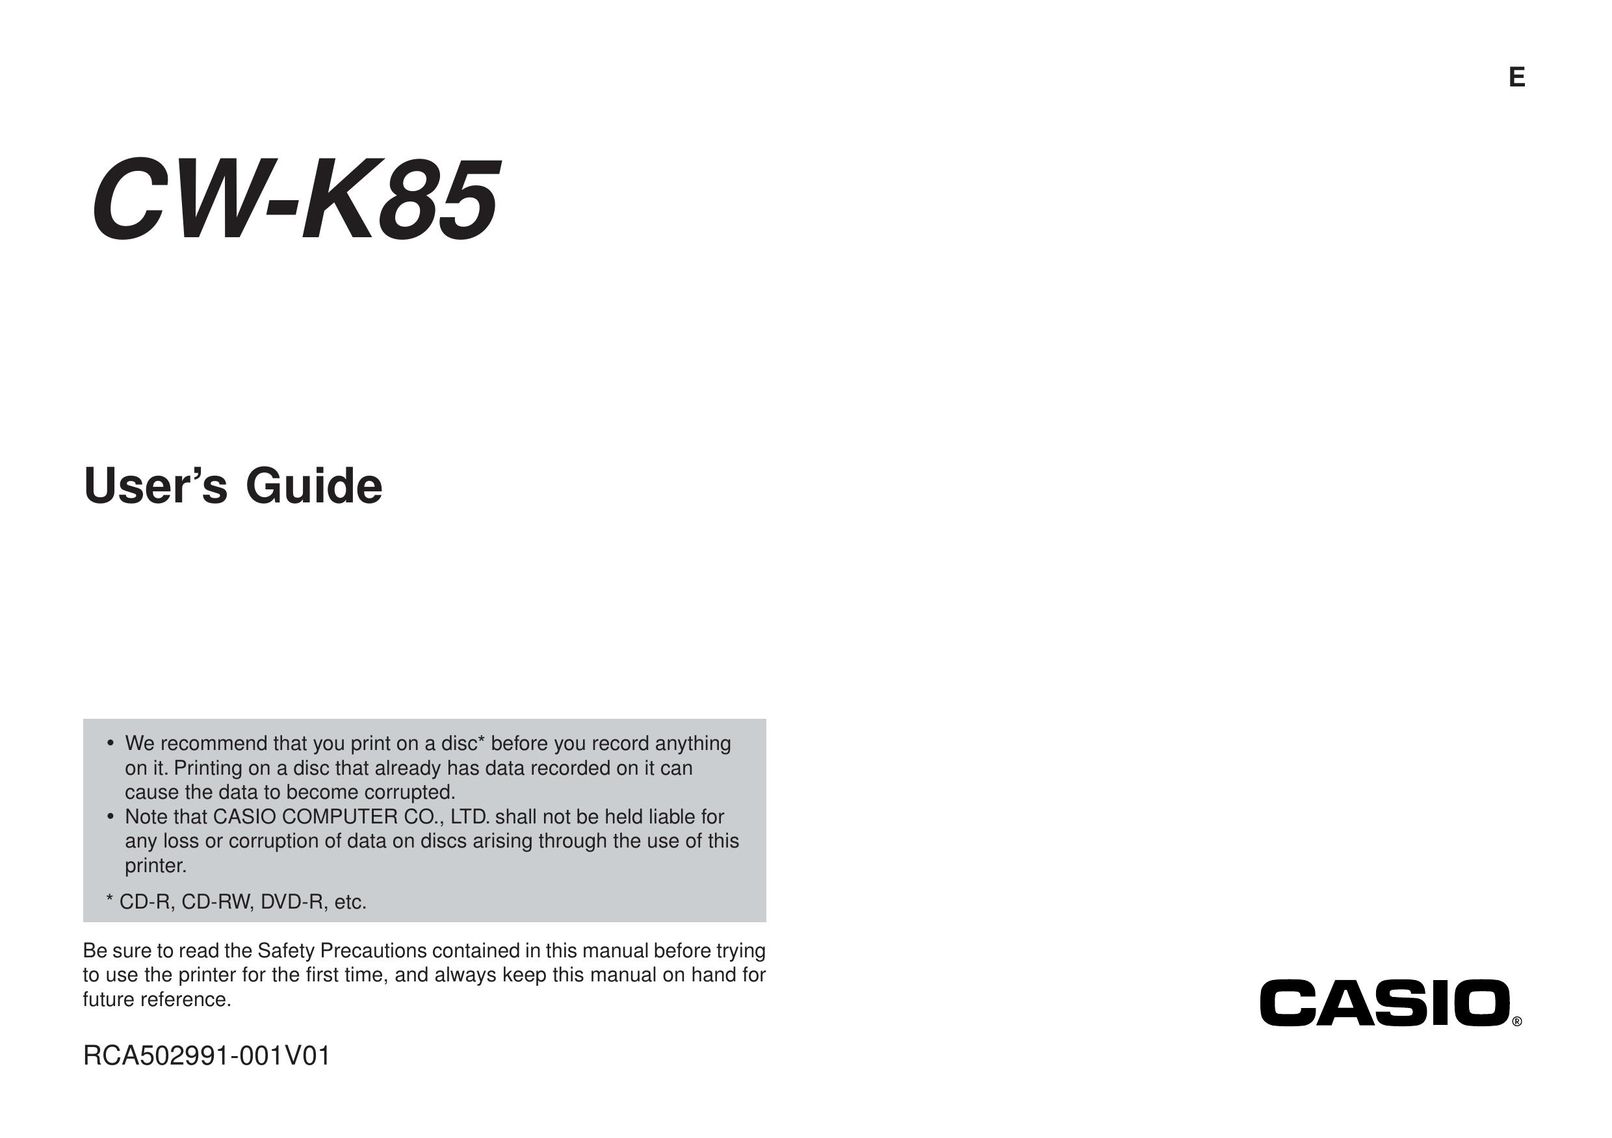 Casio CW-K85 Printer User Manual